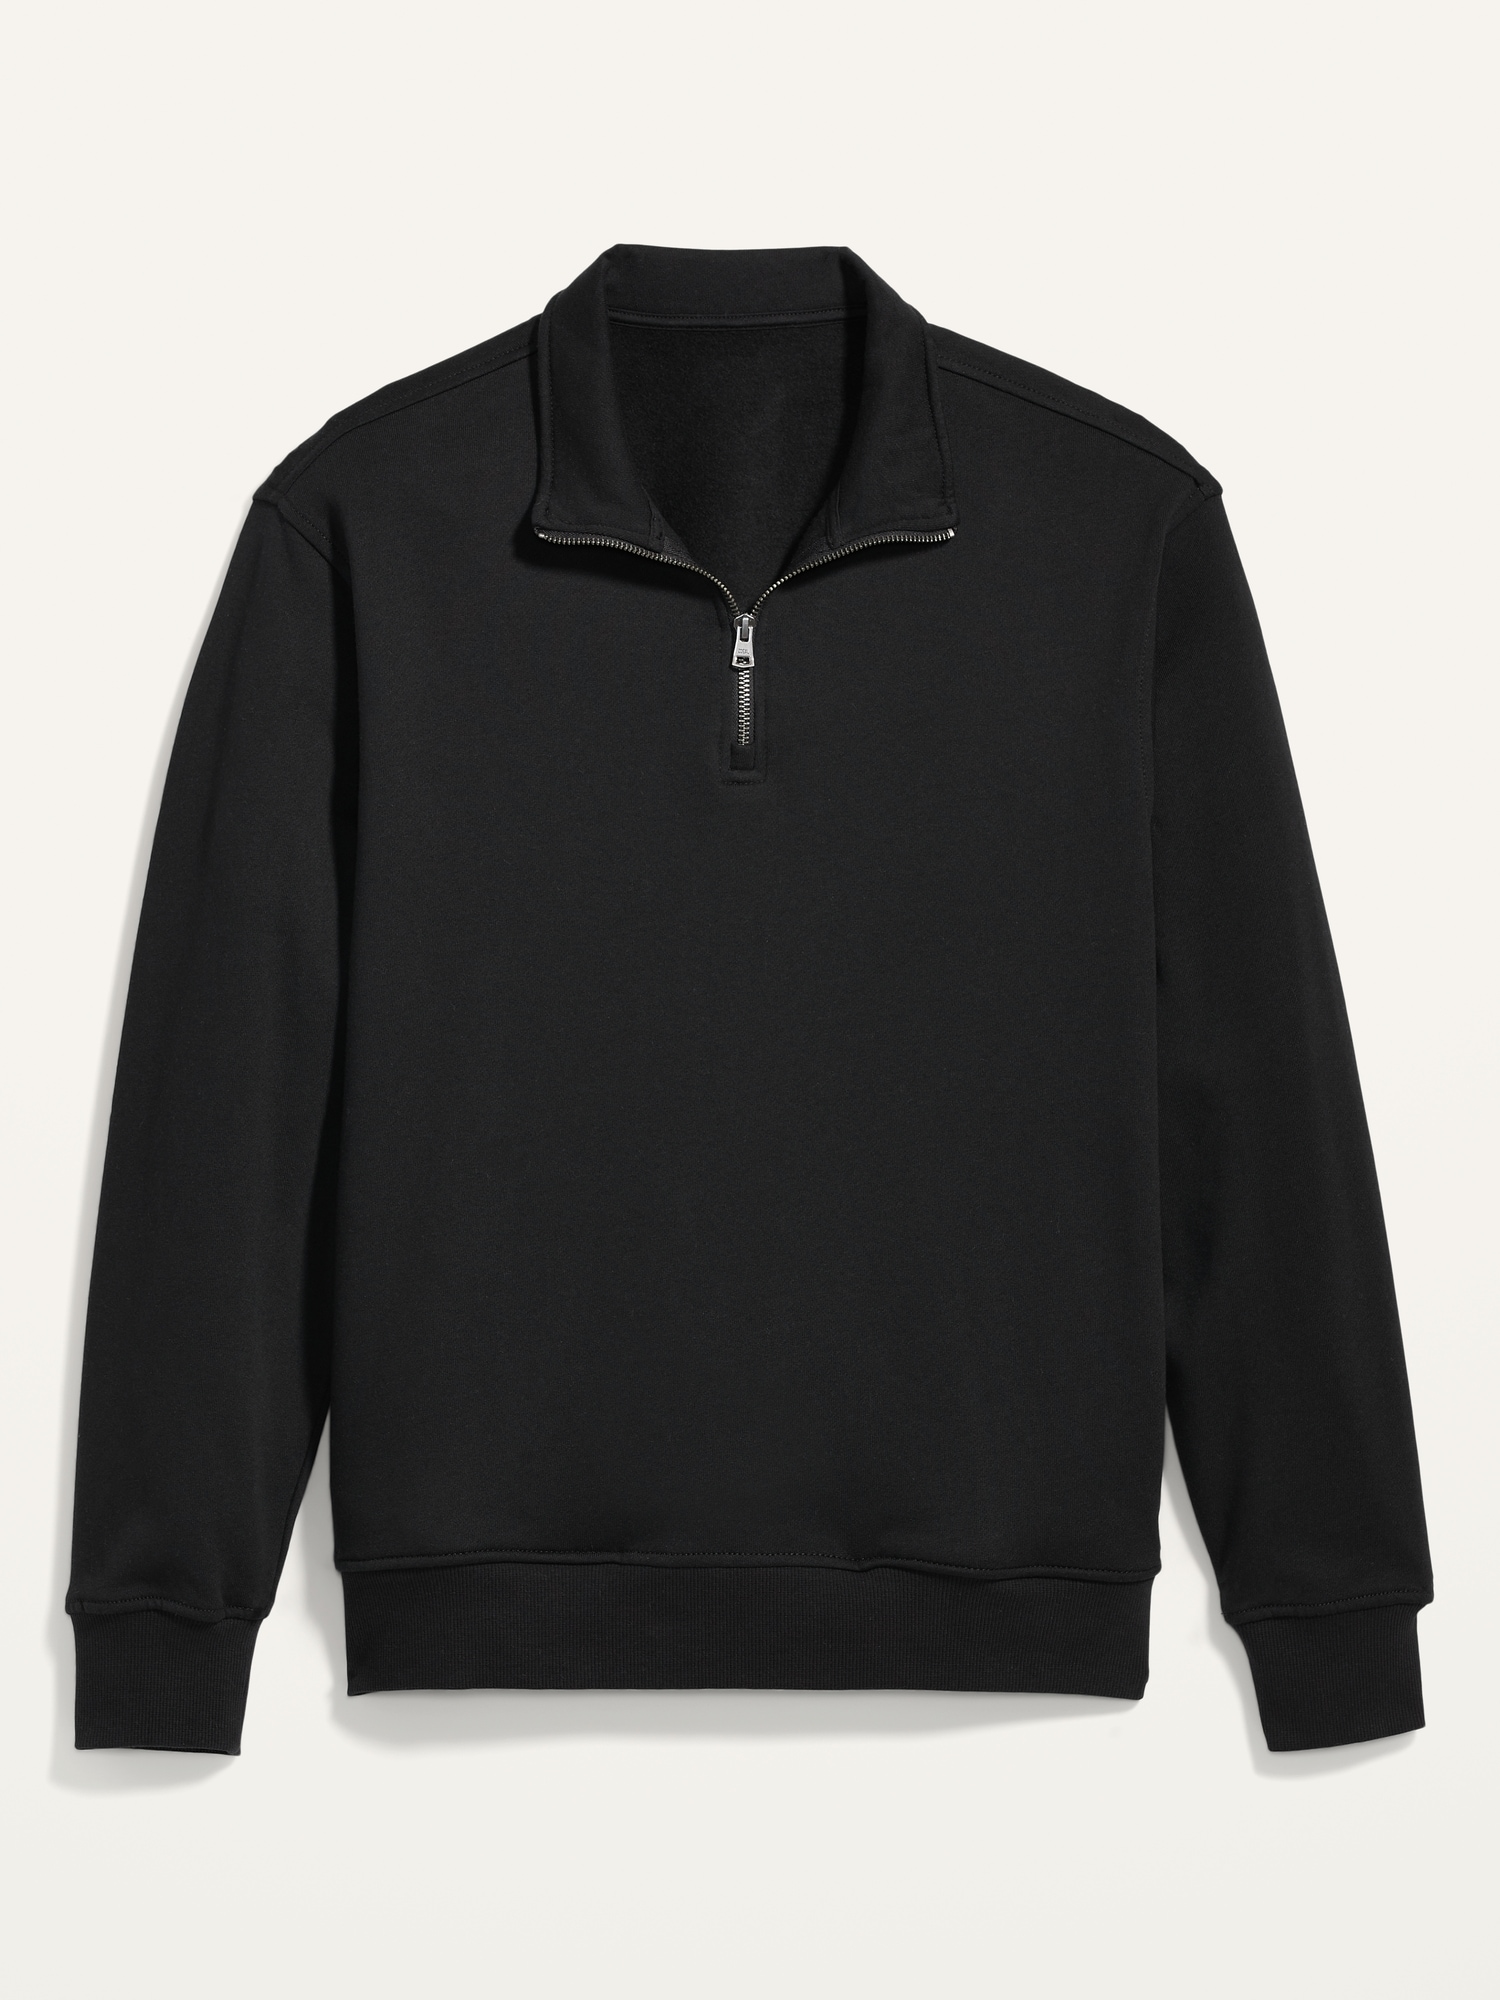 Oversized Quarter-Zip Mock-Neck Sweatshirt for Men | Old Navy